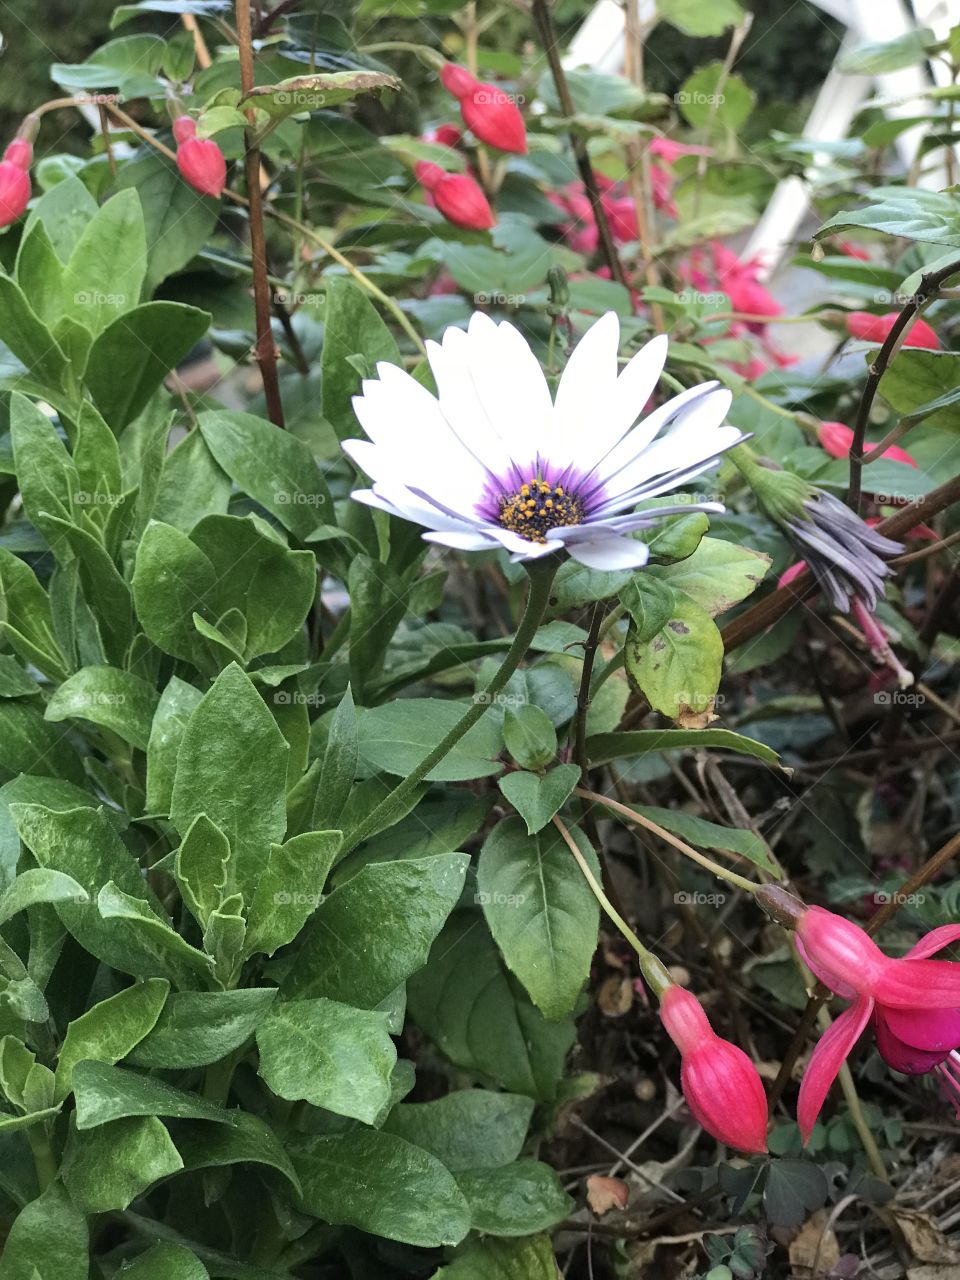 Flower in my garden 